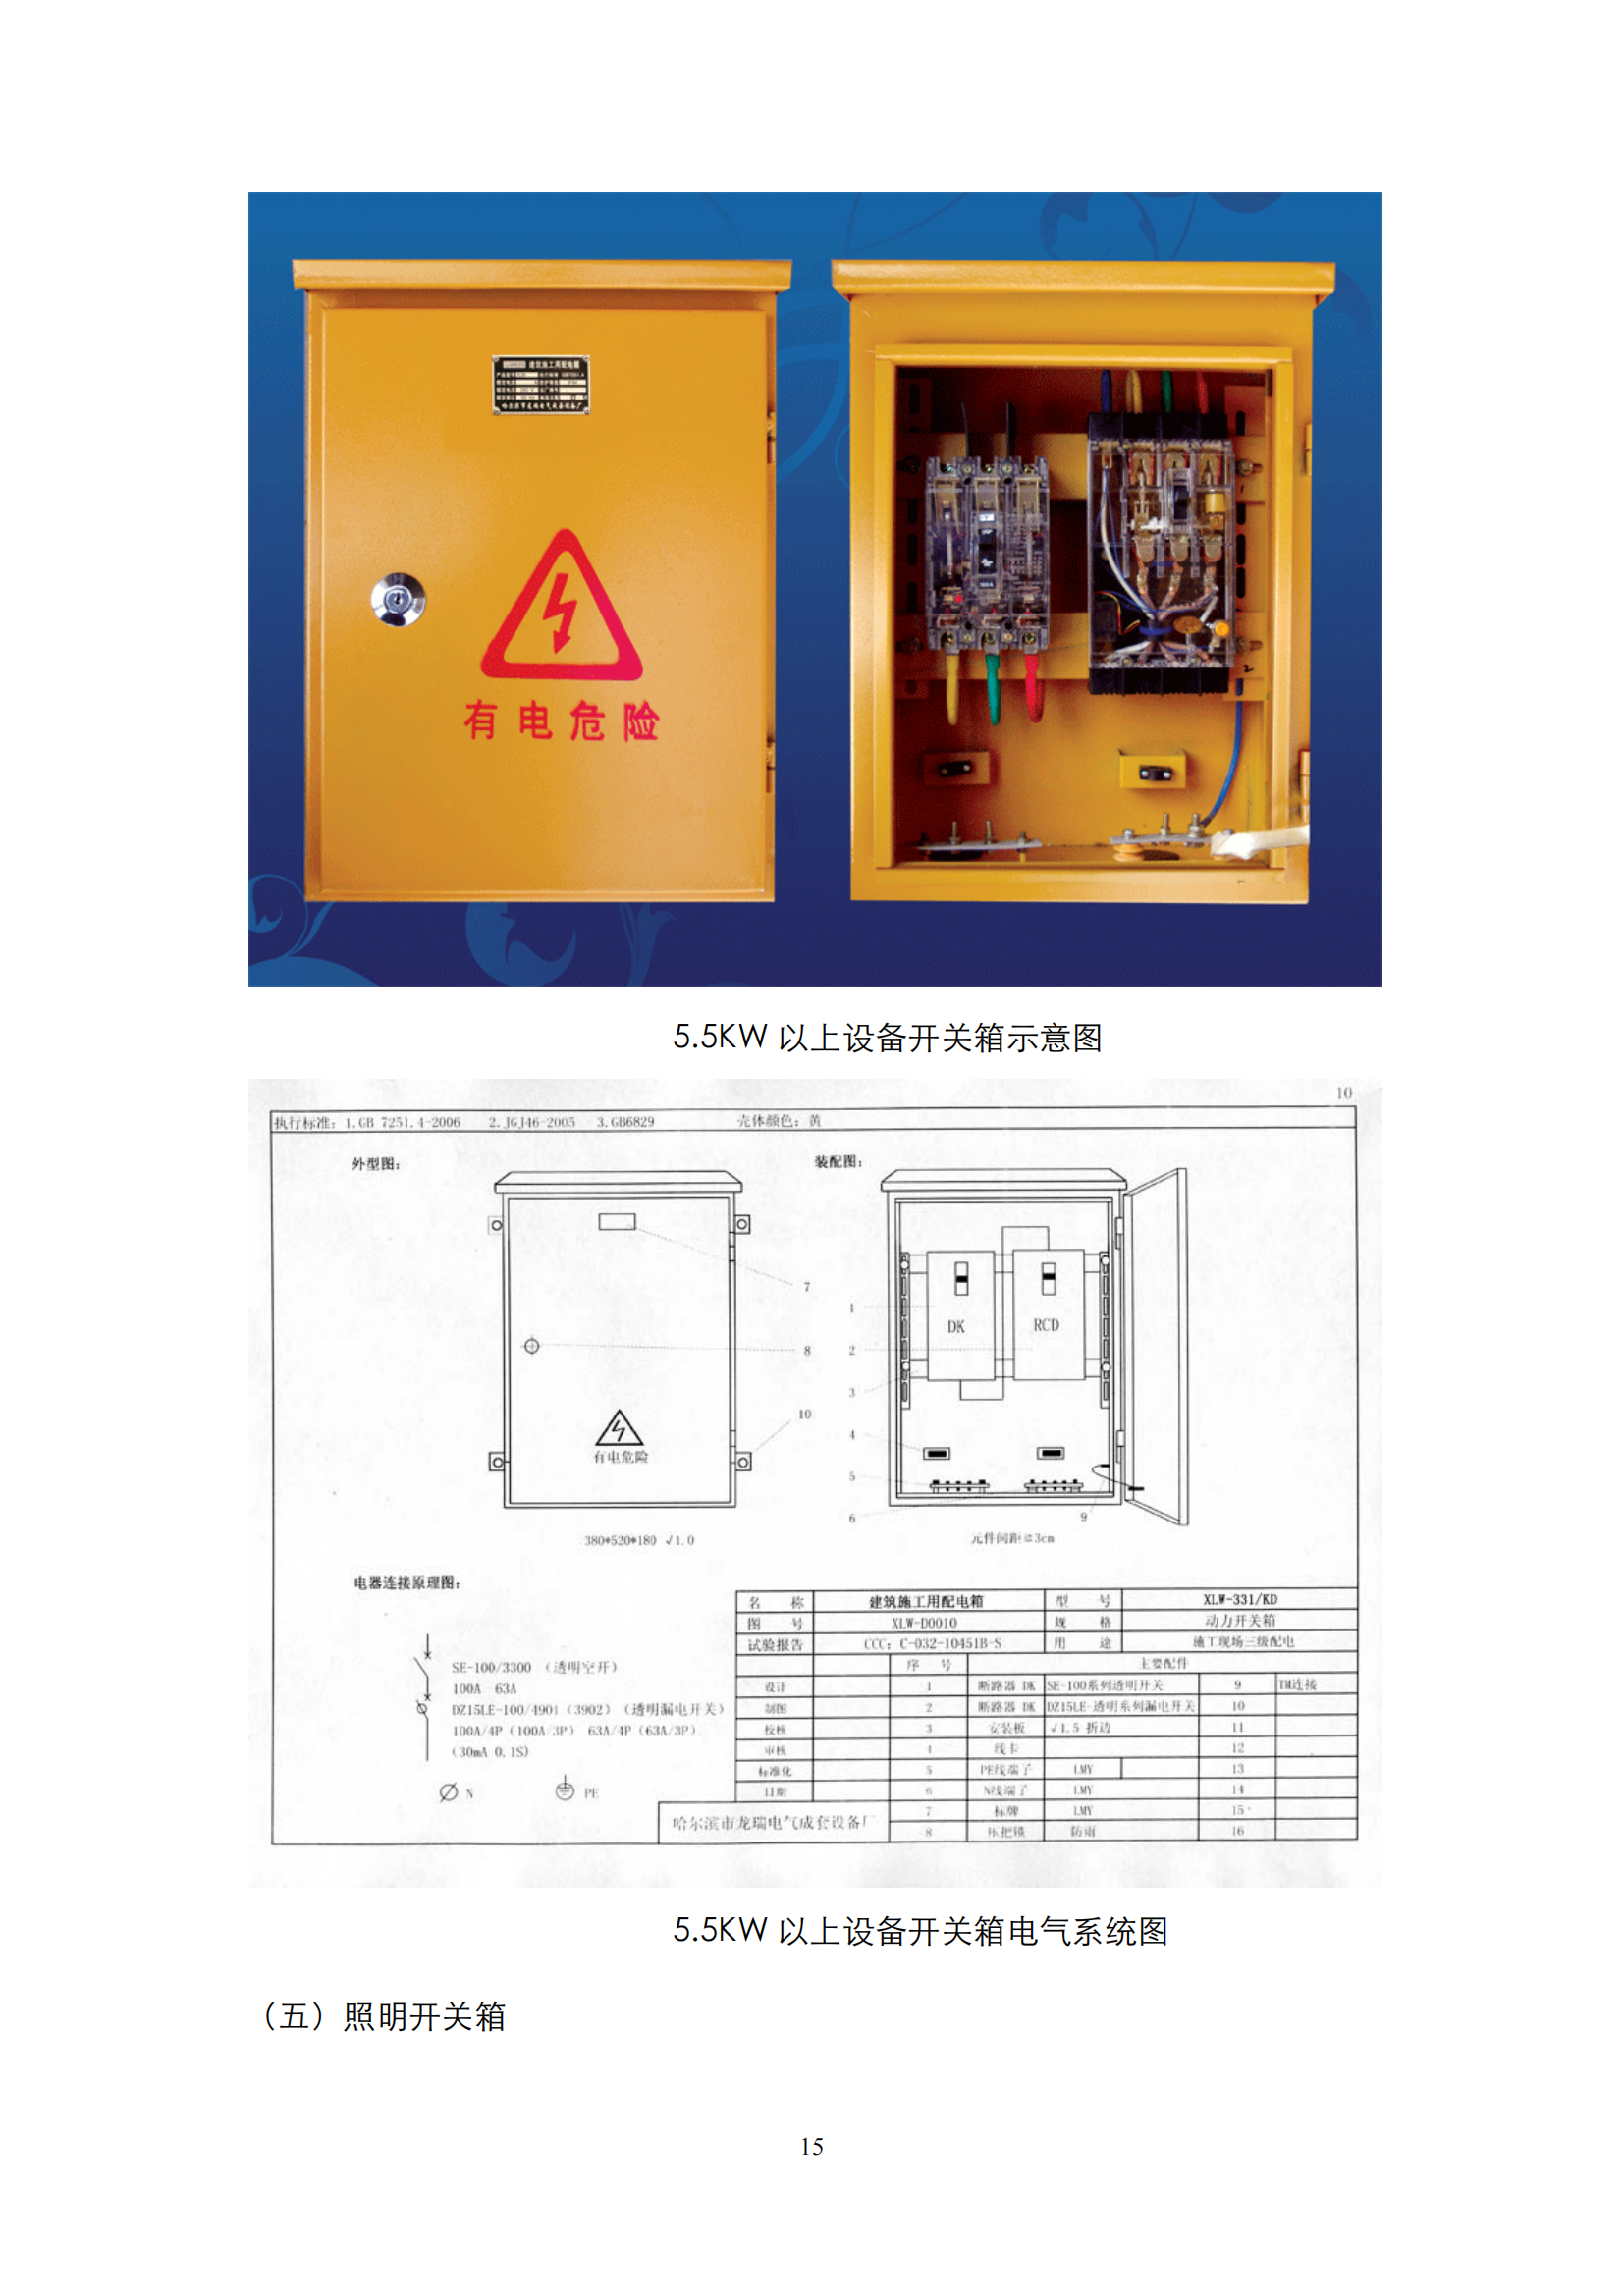 施工现场临时用电配电箱标准化配置图集插图(15)